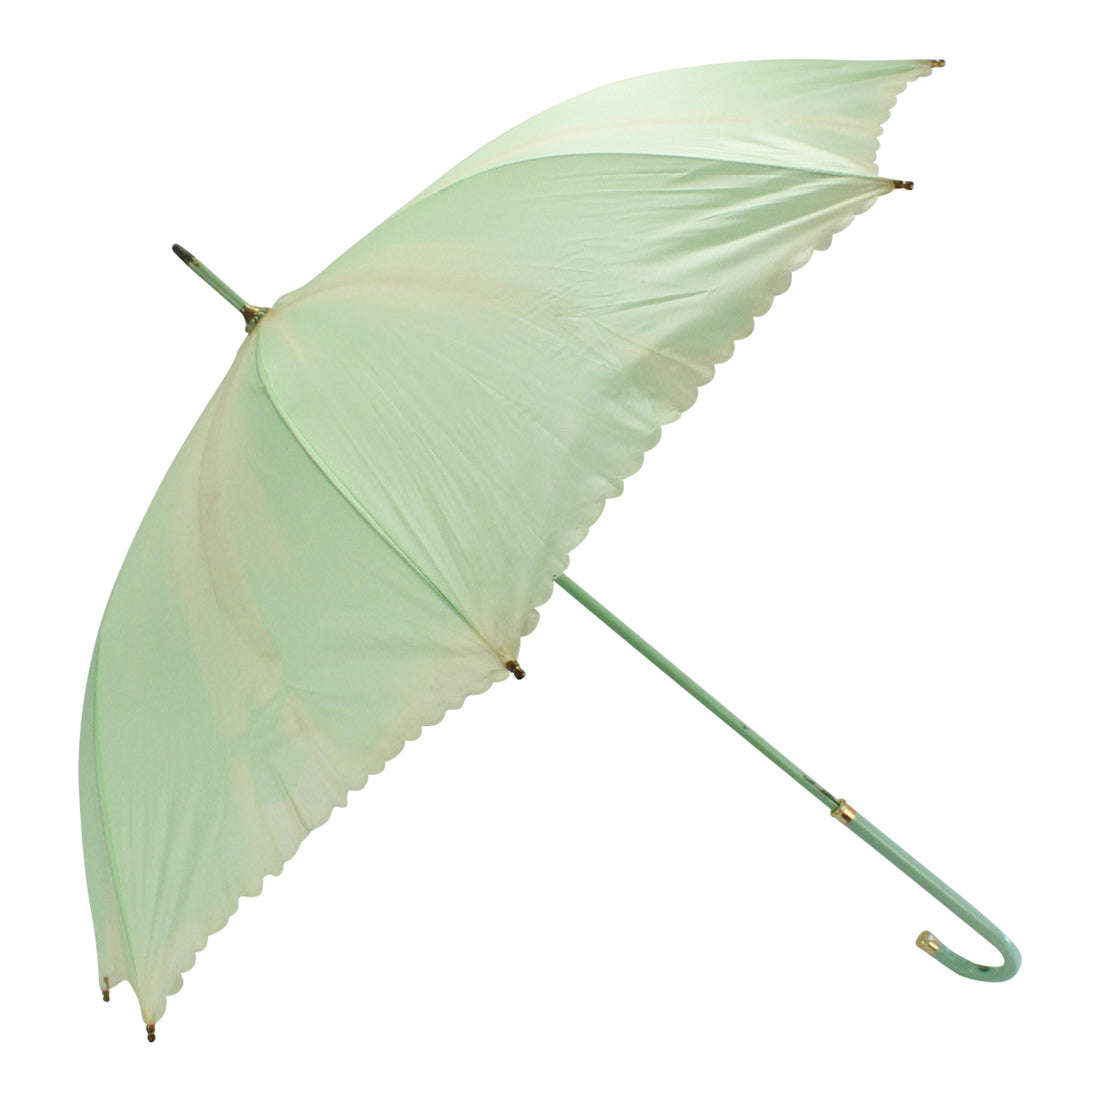 Teal Umbrella